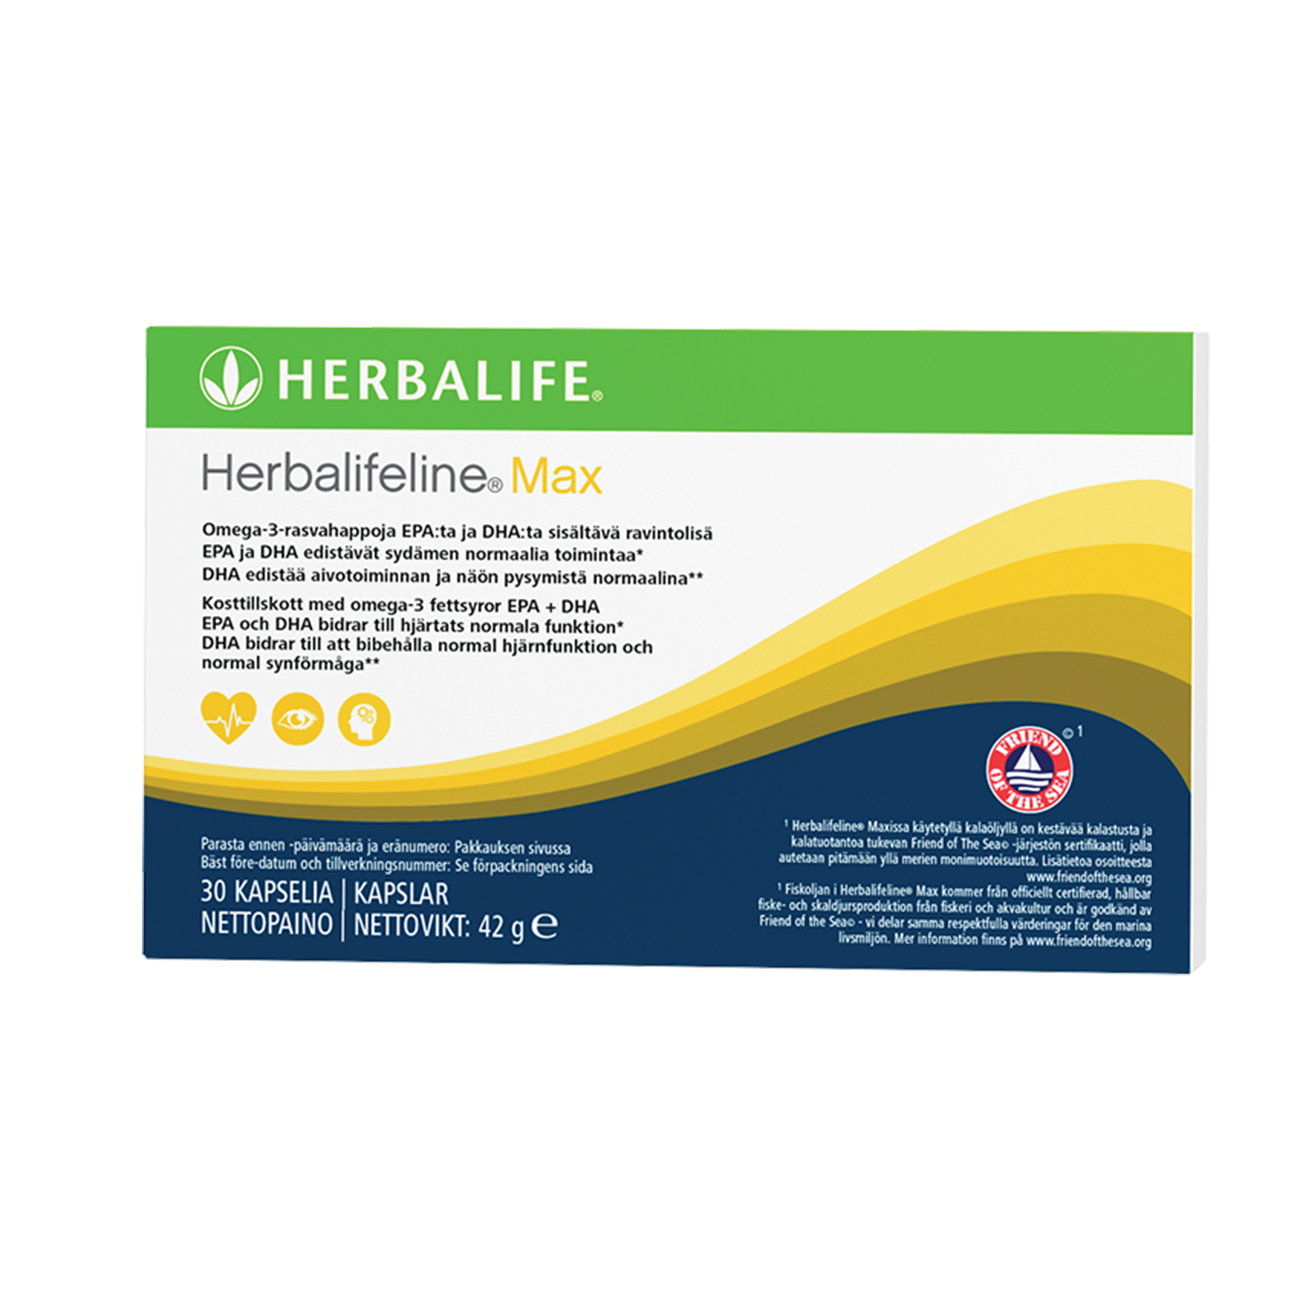 Herbalifeline® Max Omega-3 -ravintolisä tuotekuva